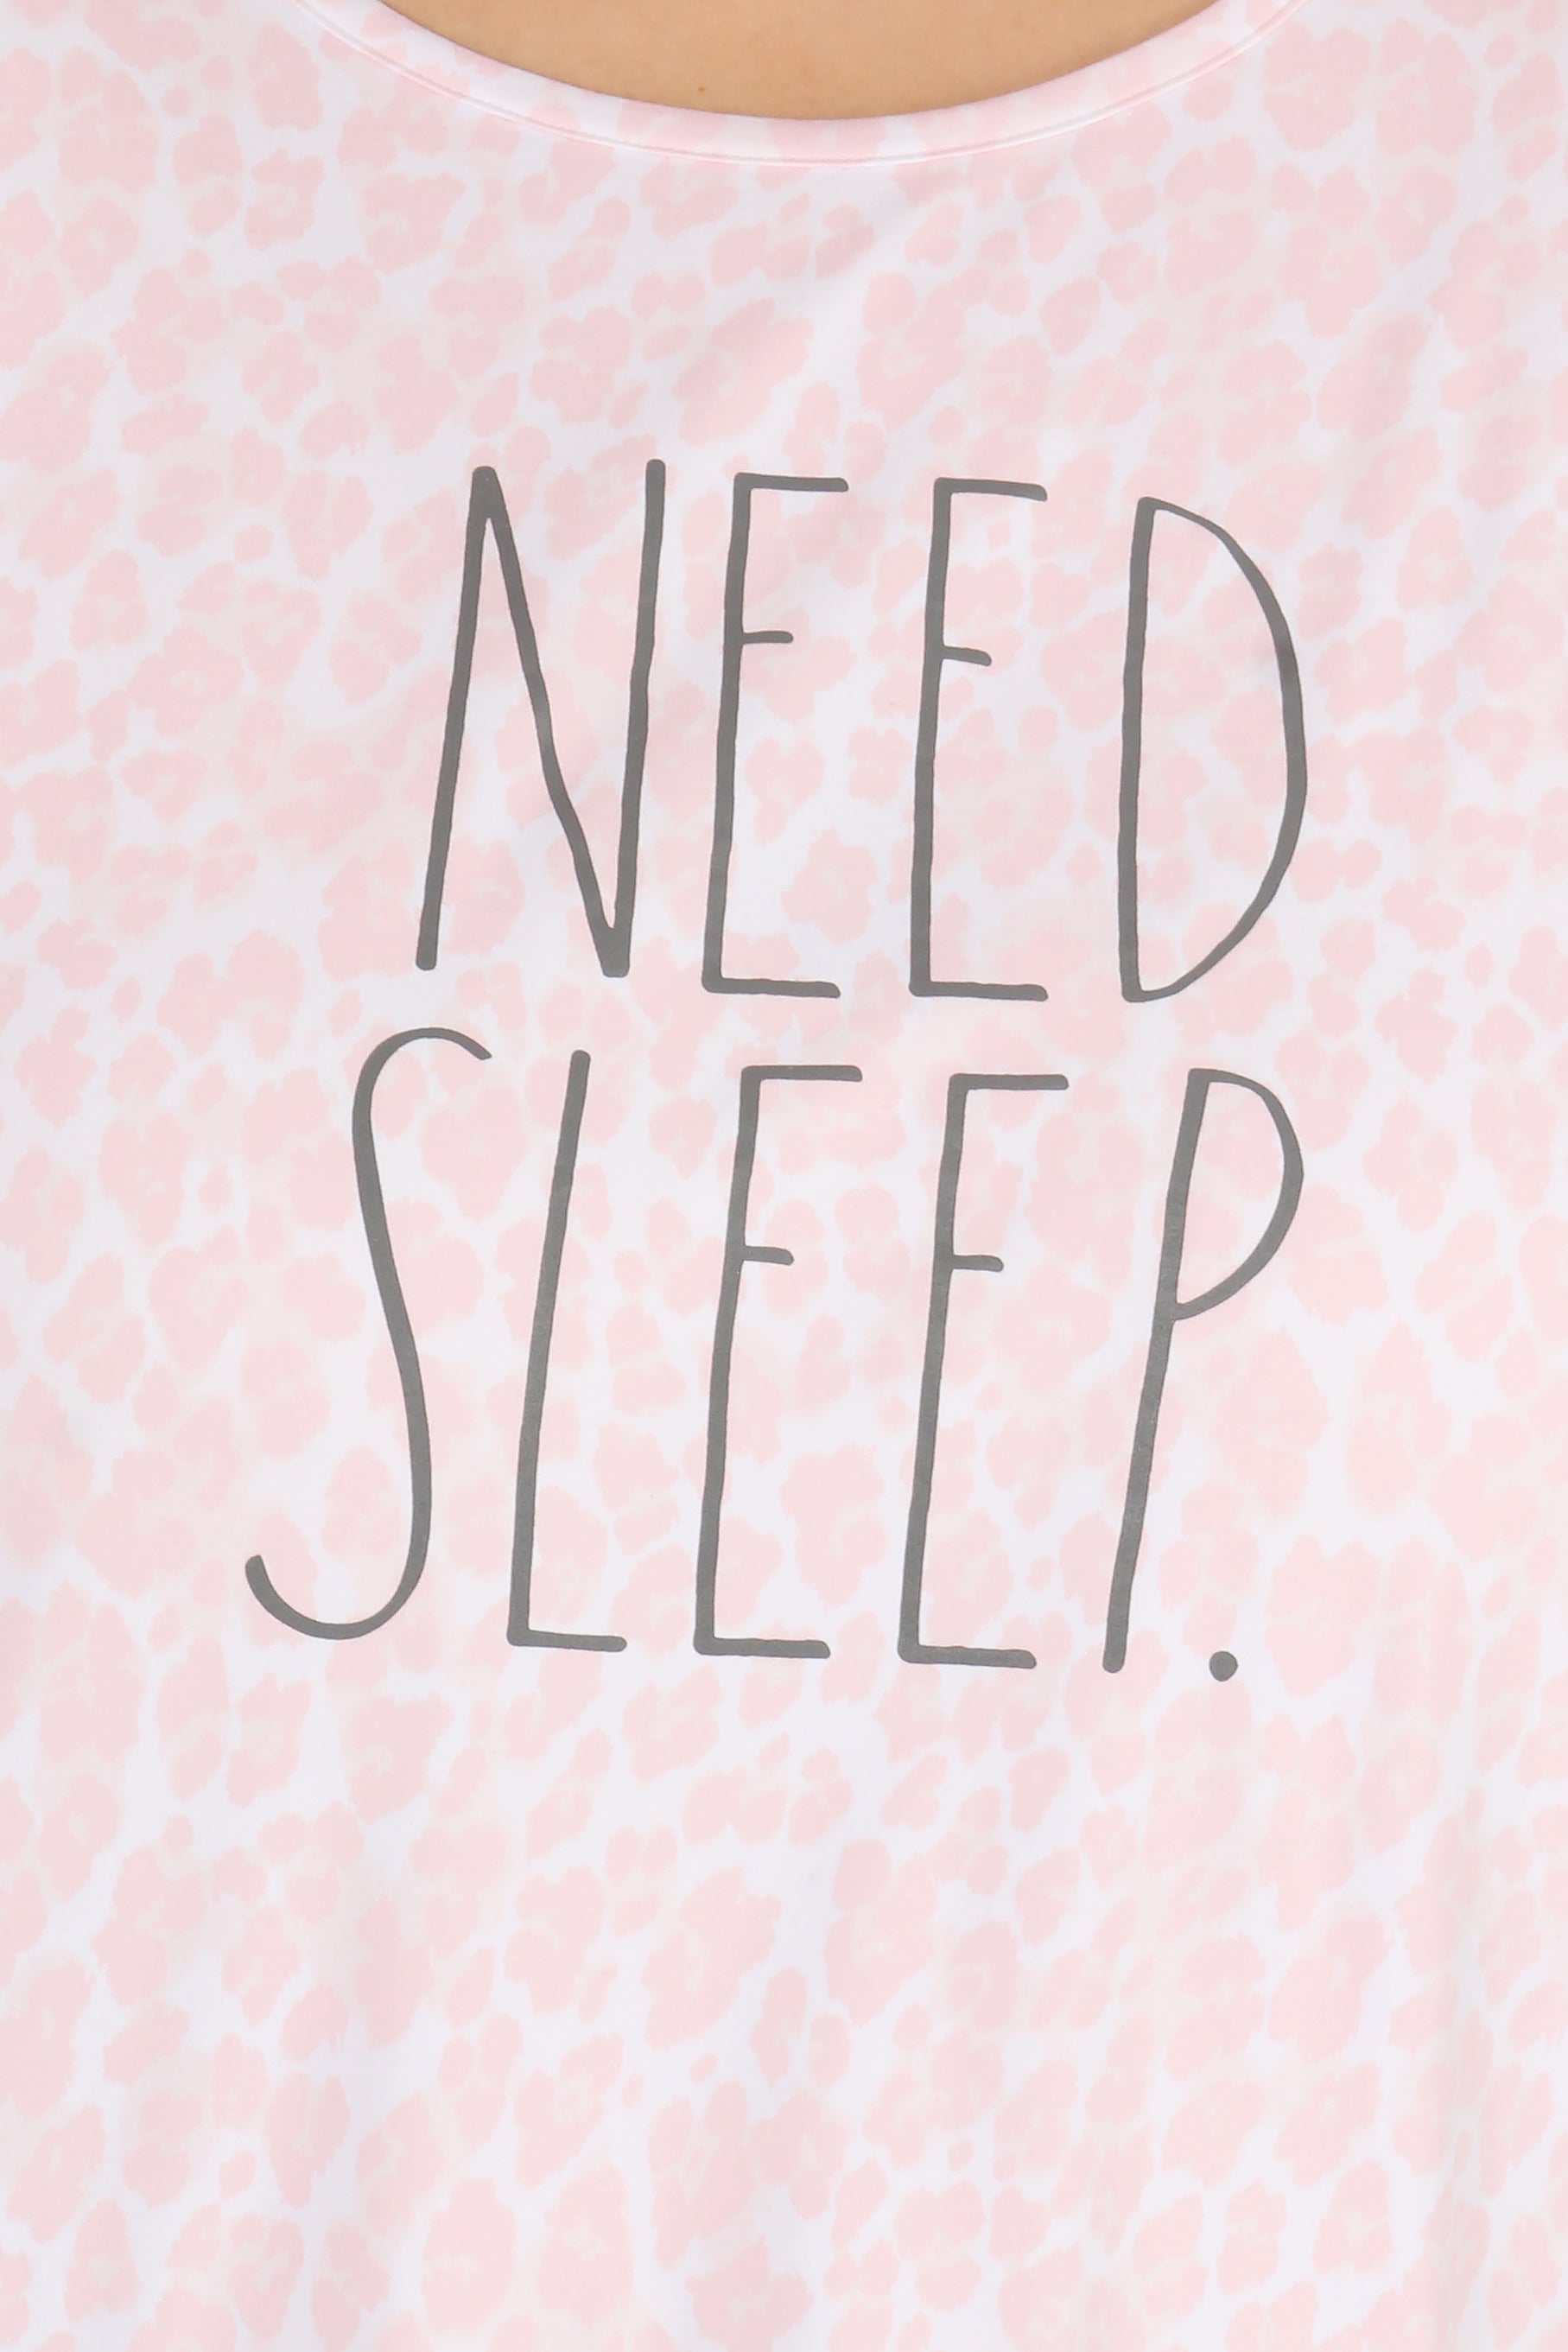 Women's "NEED SLEEP" Plus Size Short Sleeve Nightshirt - Rae Dunn Wear